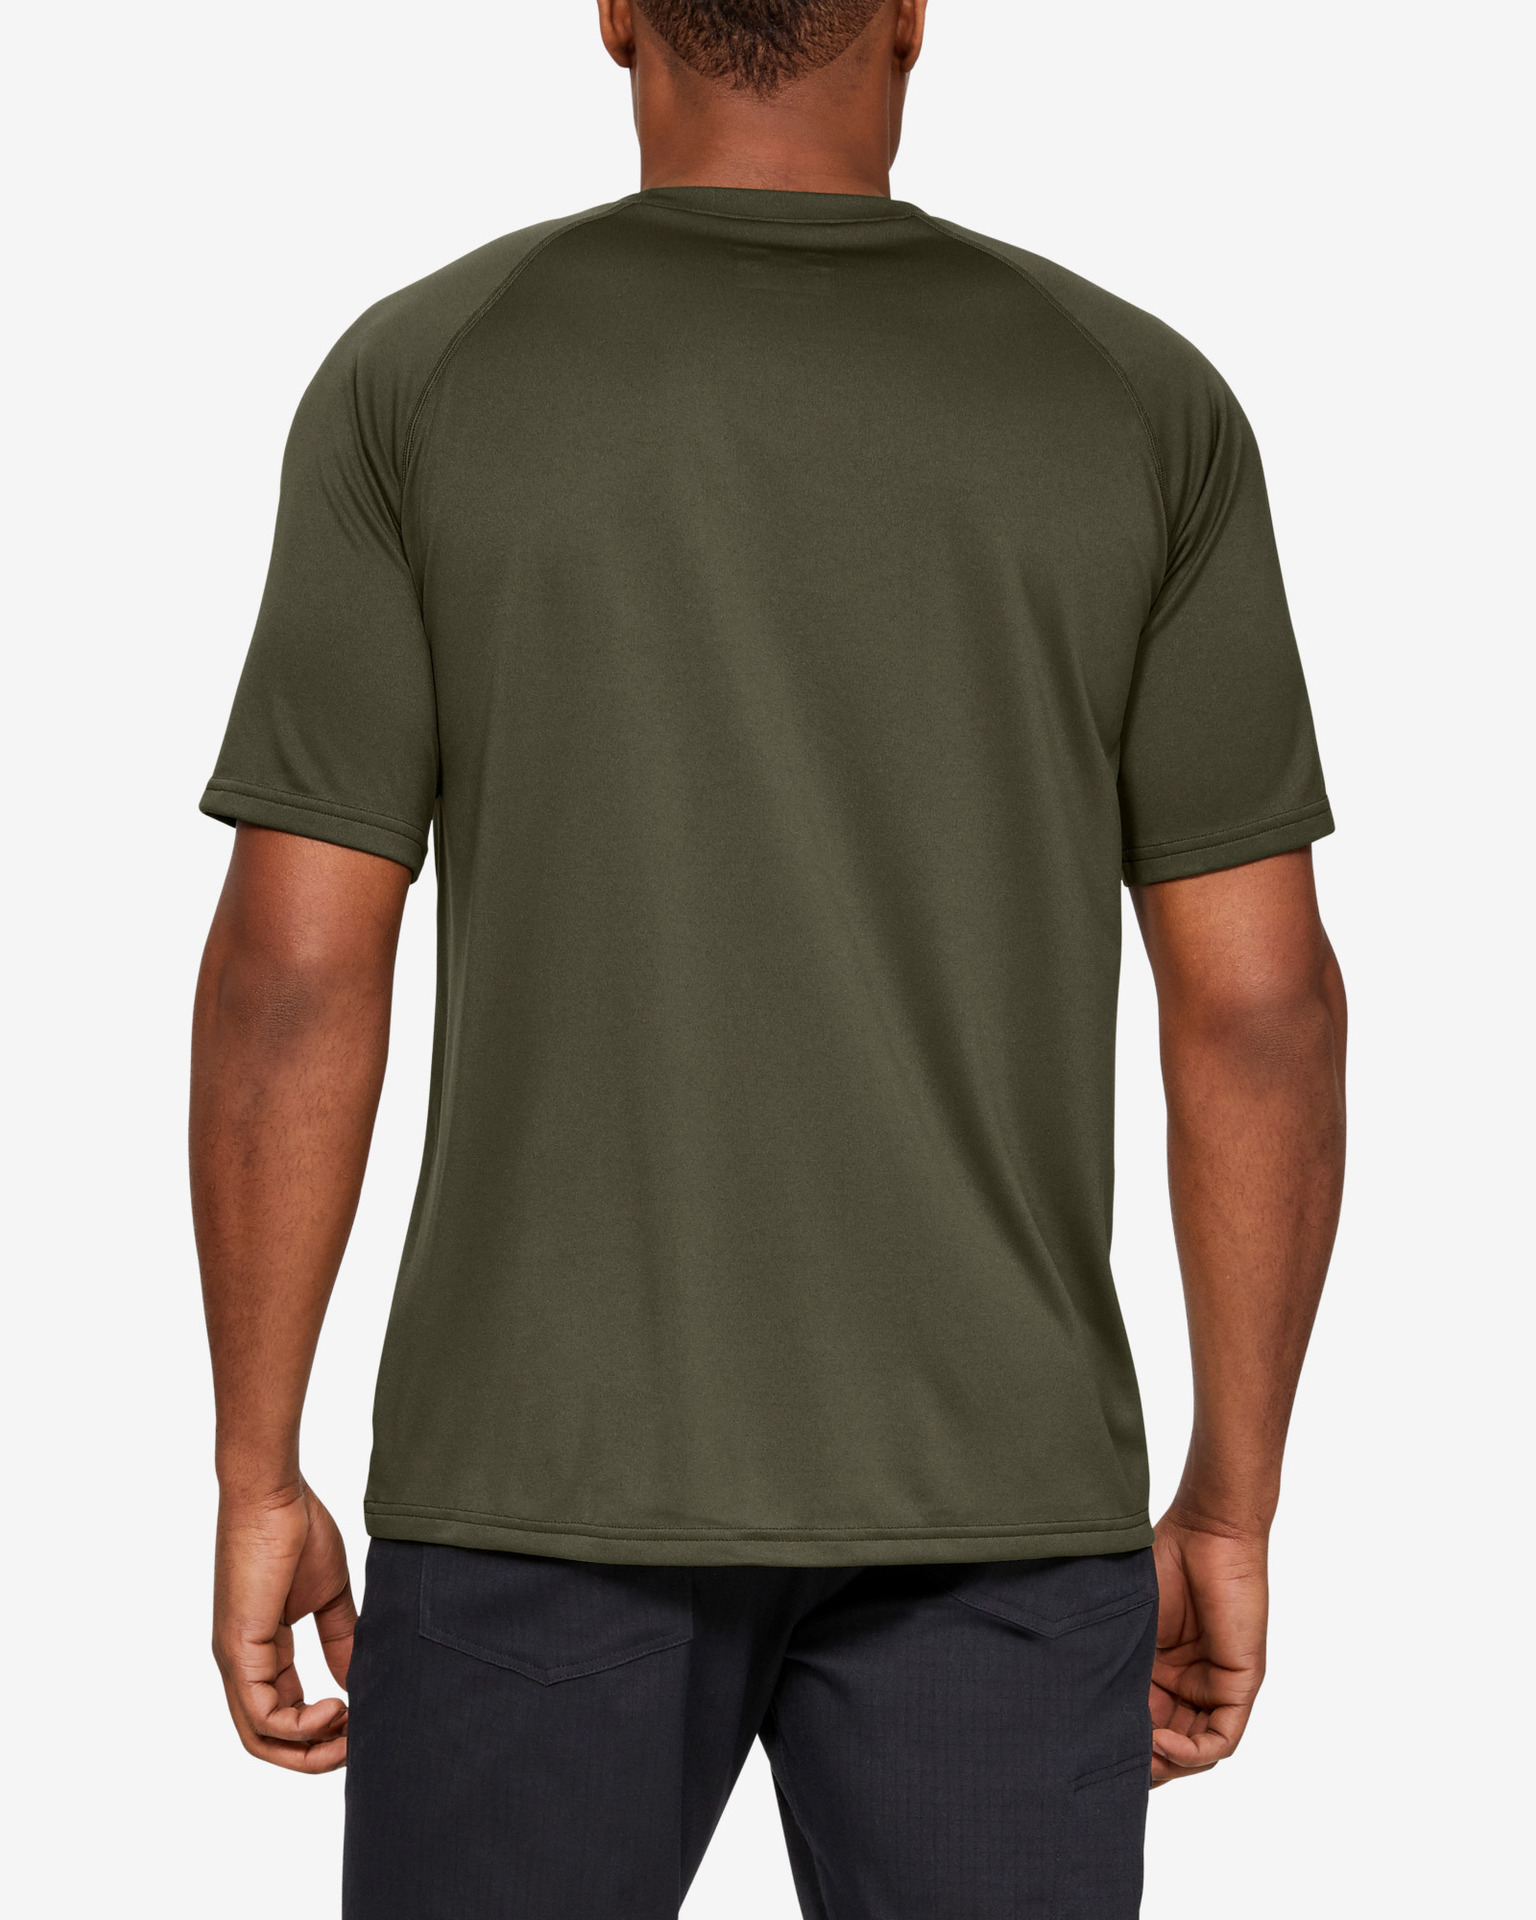 Under Armour - Tactical Tech™ T-shirt